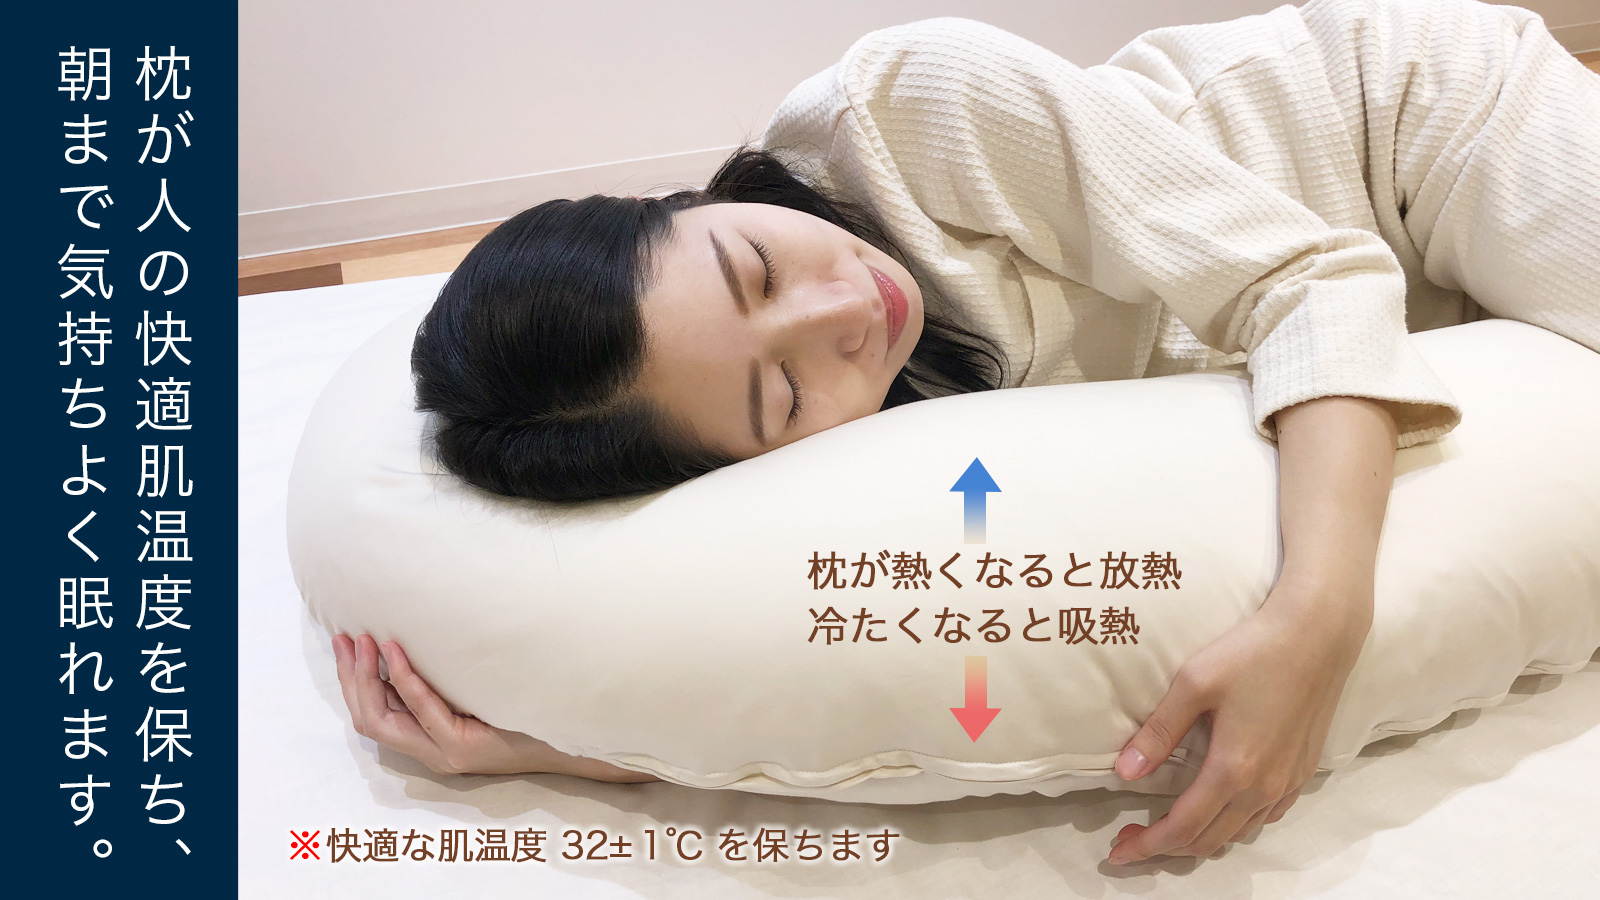 枕が人の快適肌温度を保ち、朝まで気持ちよく眠れます。